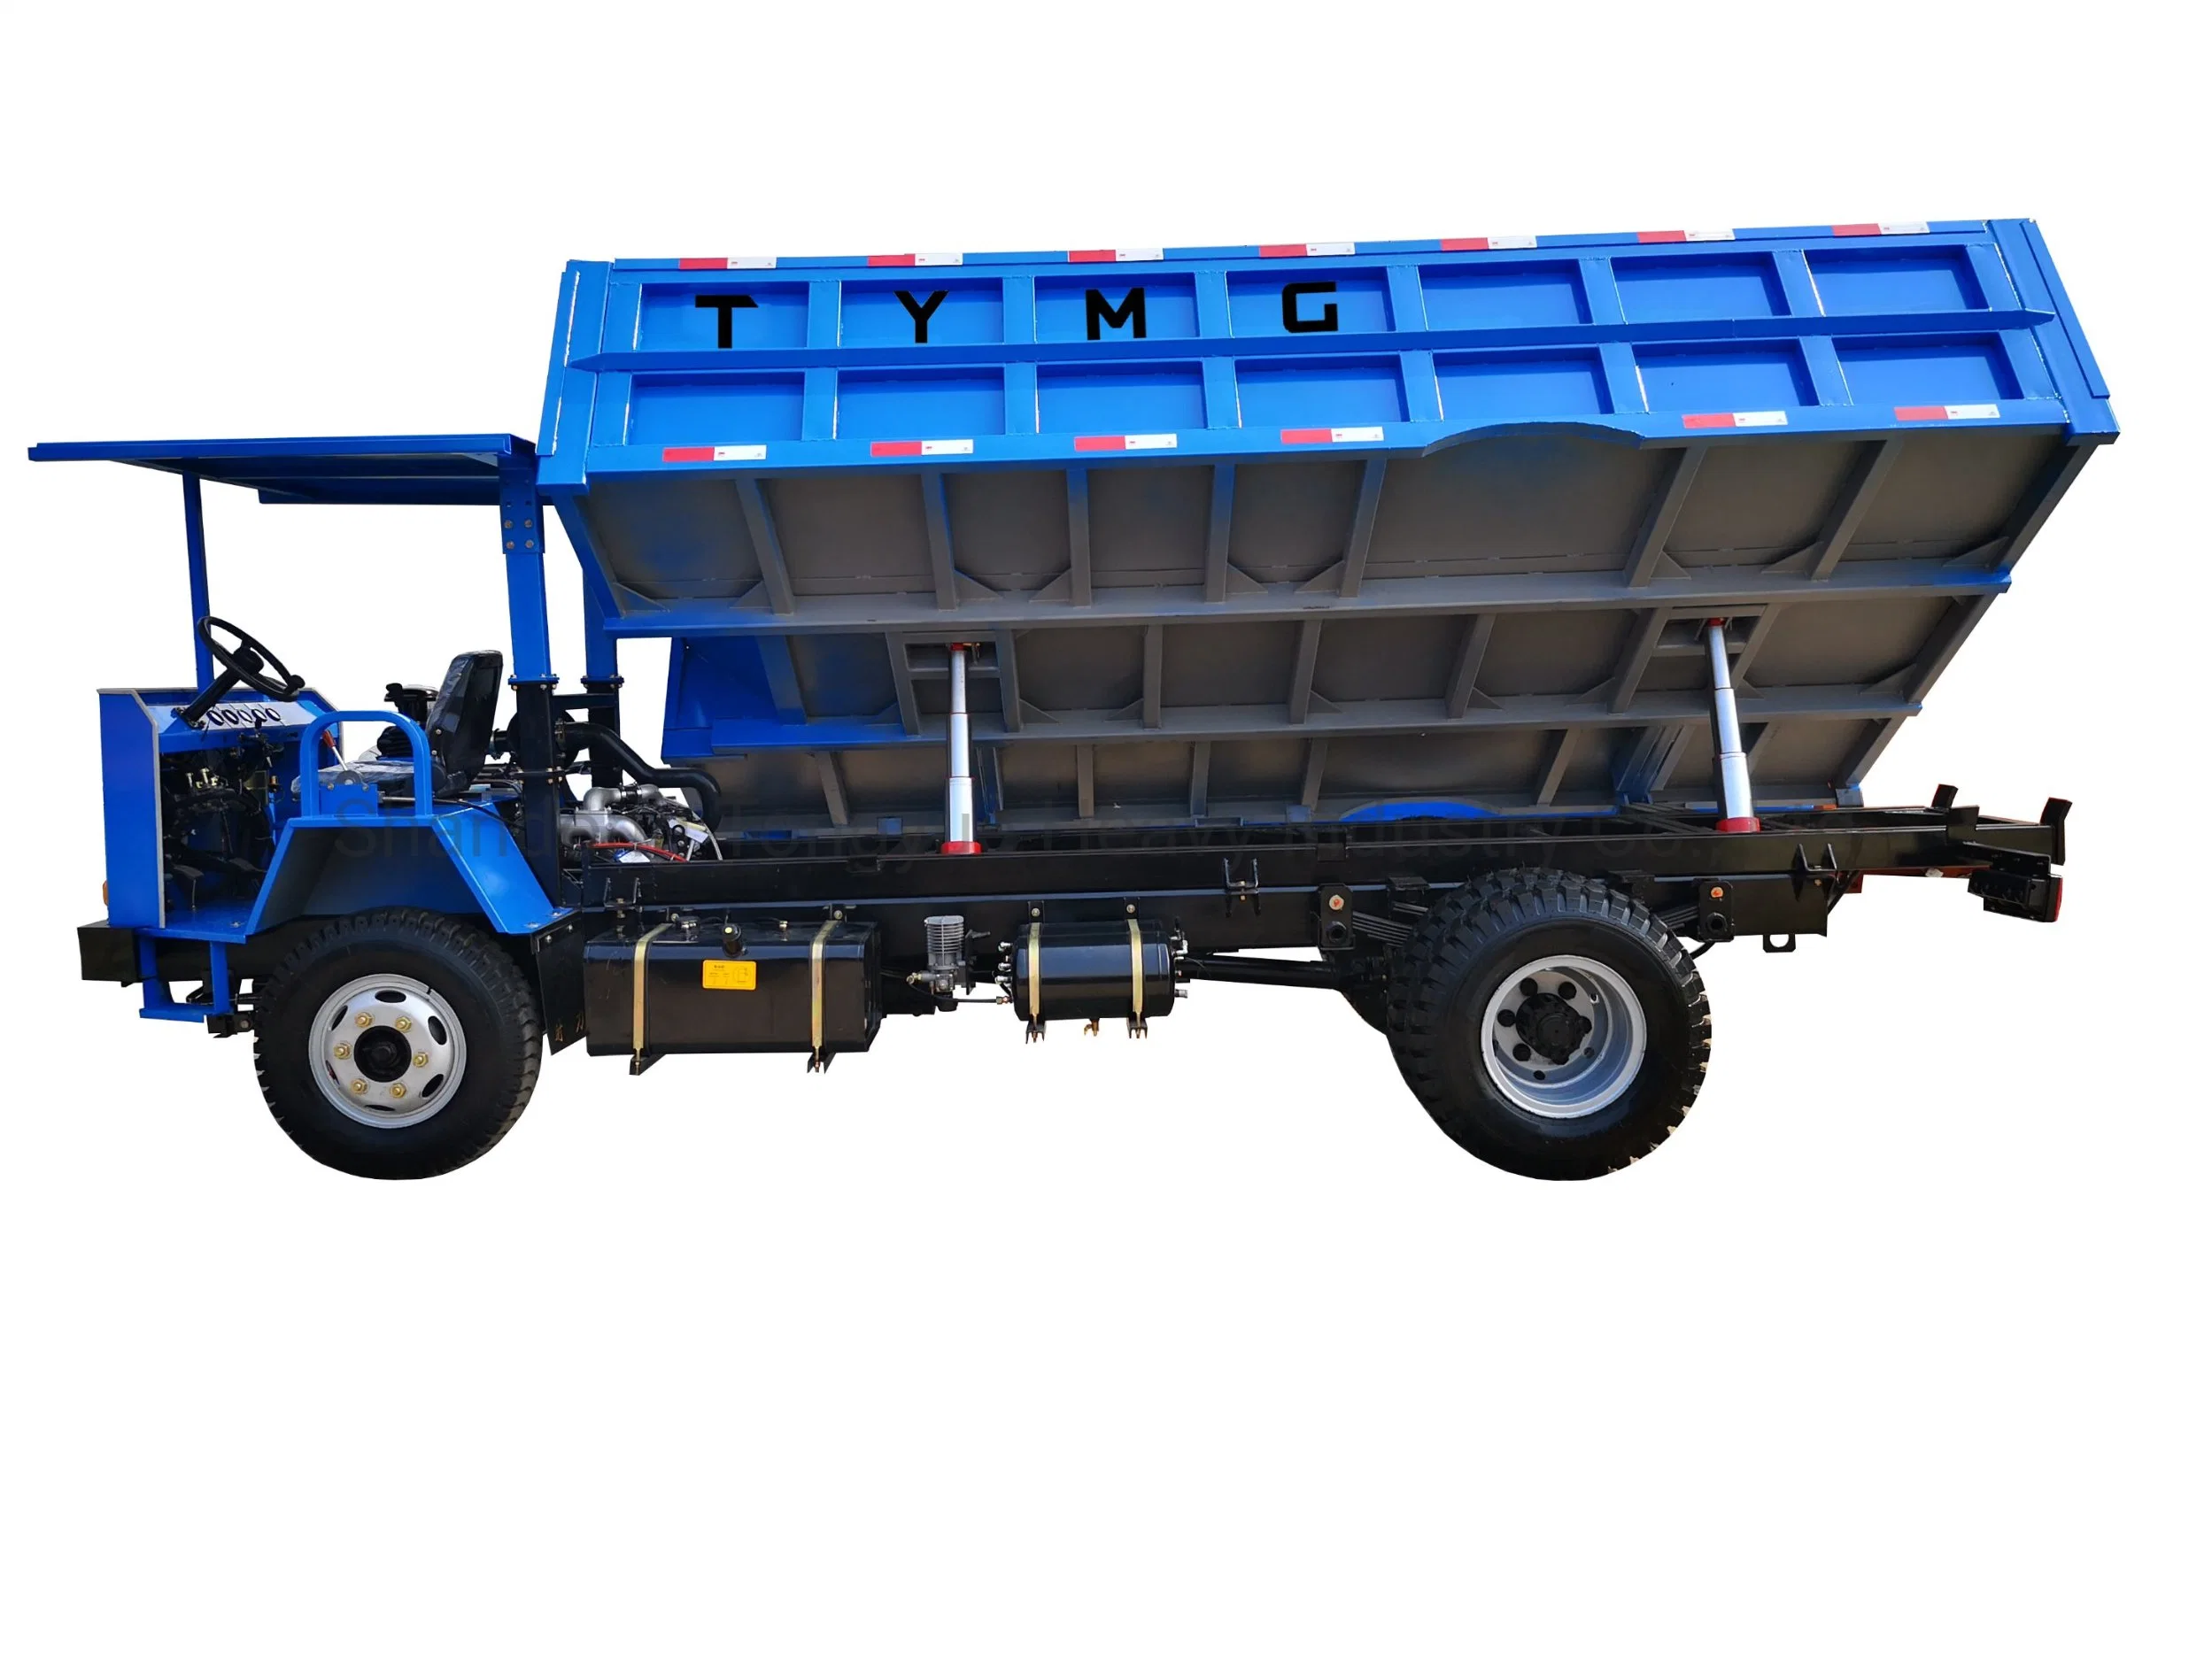 Transportation of Mining Dump Trucks 4X4 Mining Dump Truck Mini Dumper on Wheels